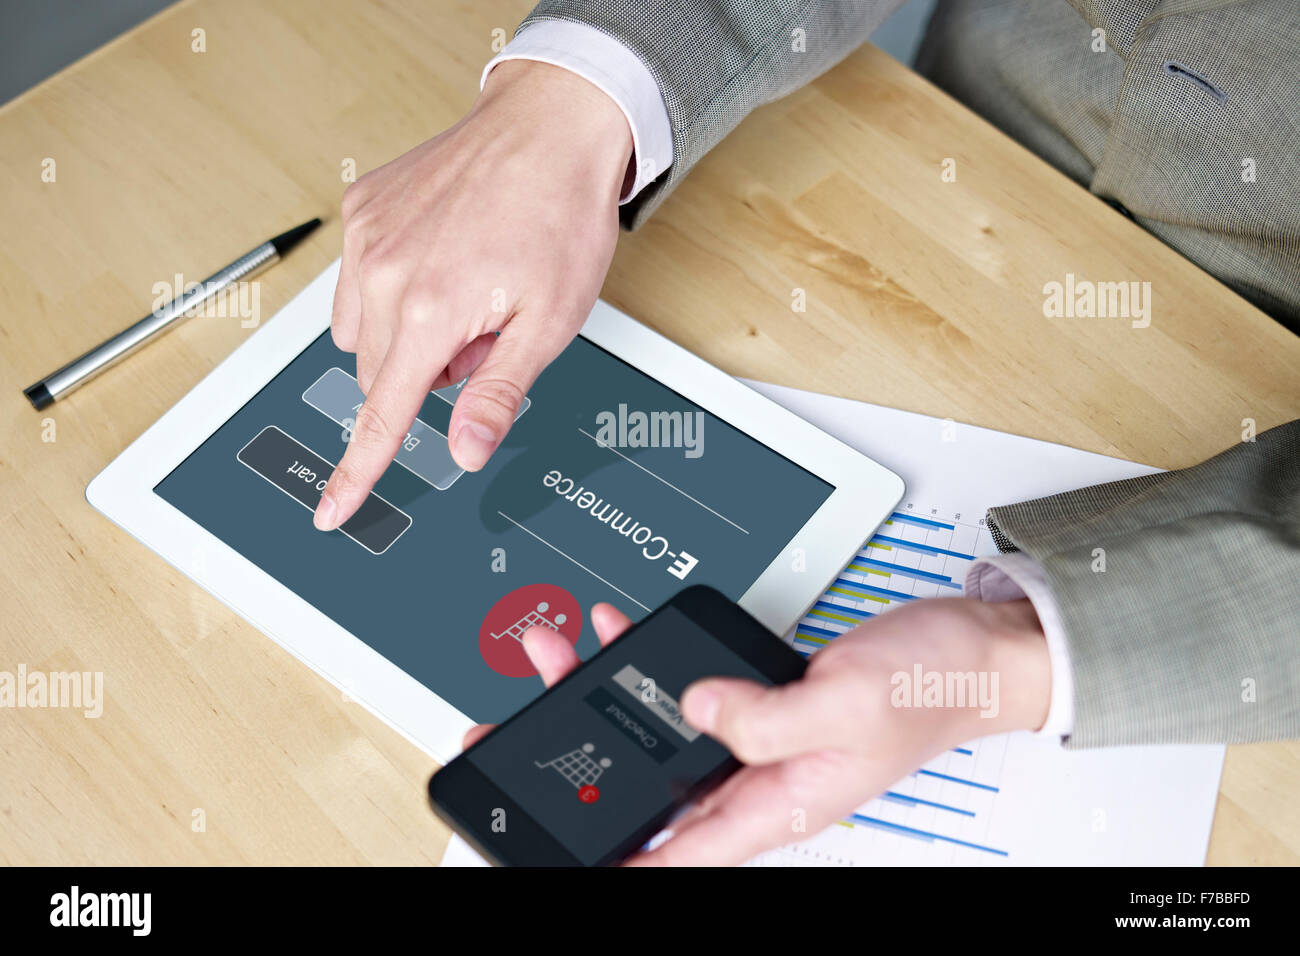 Les mains d'un homme à l'aide de téléphone portable et tablette ordinateur pendant leurs achats en ligne. Banque D'Images